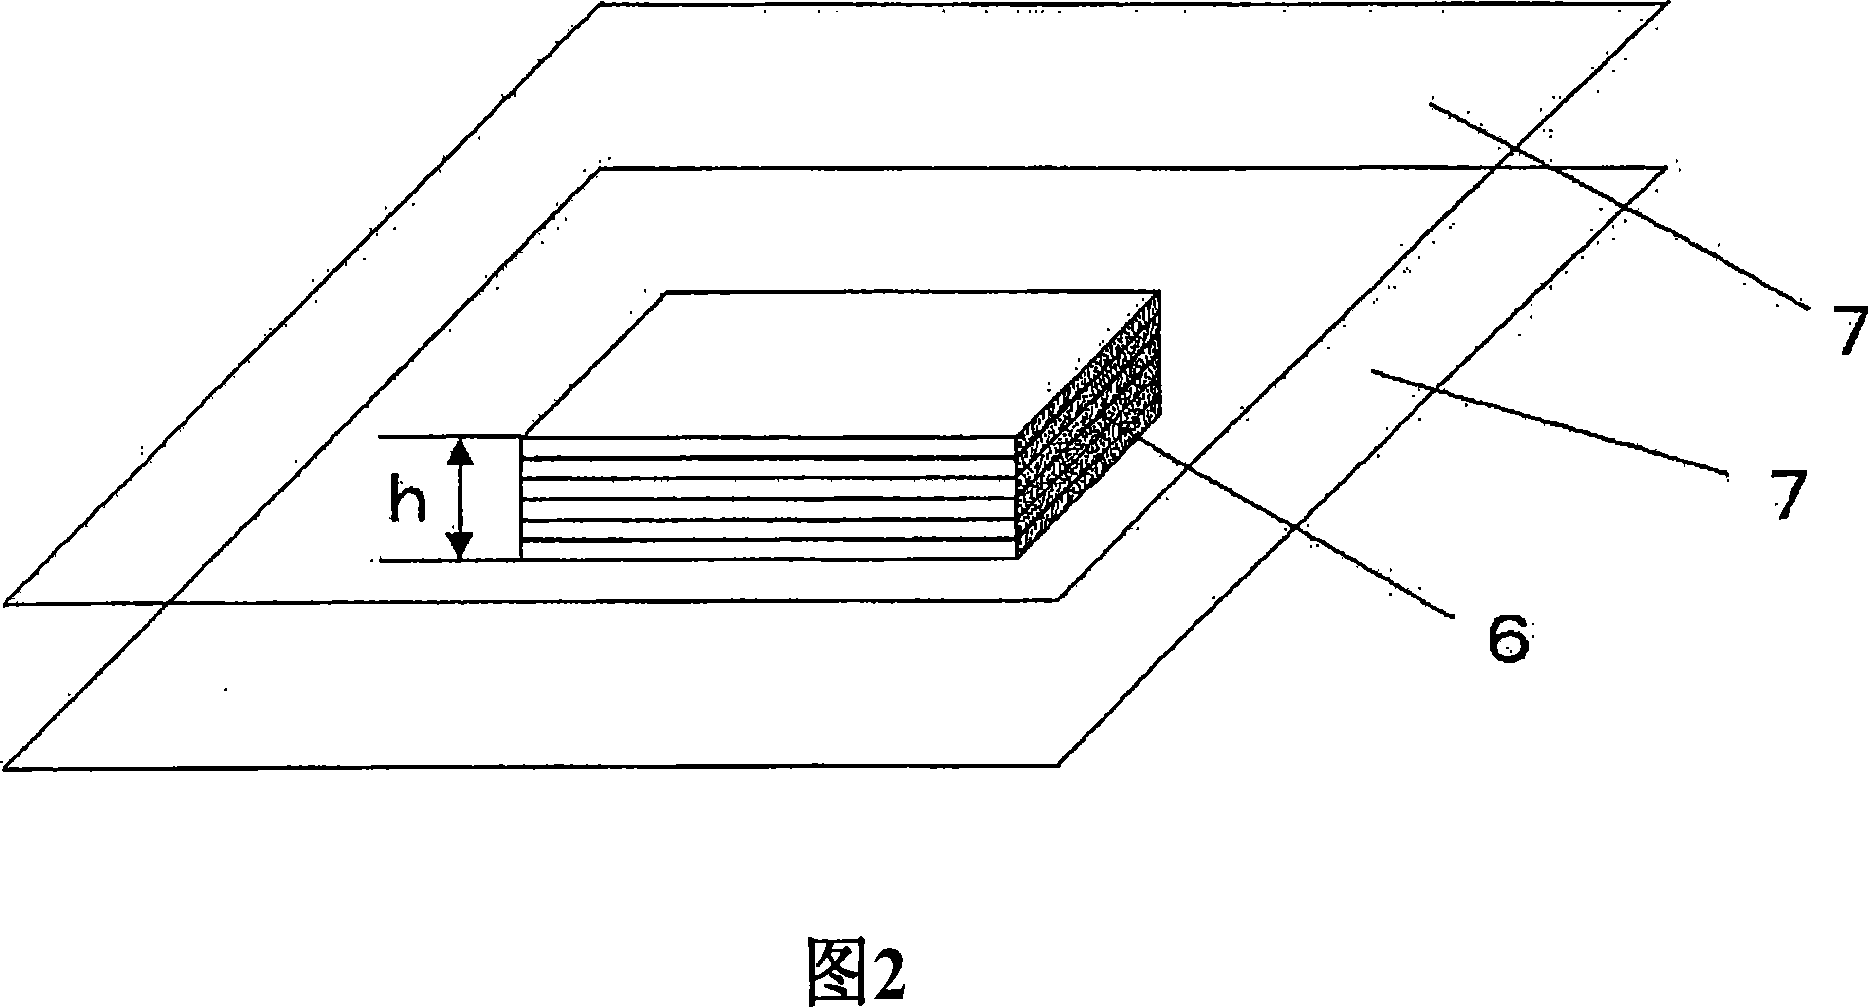 Packaging method for optical film overlap